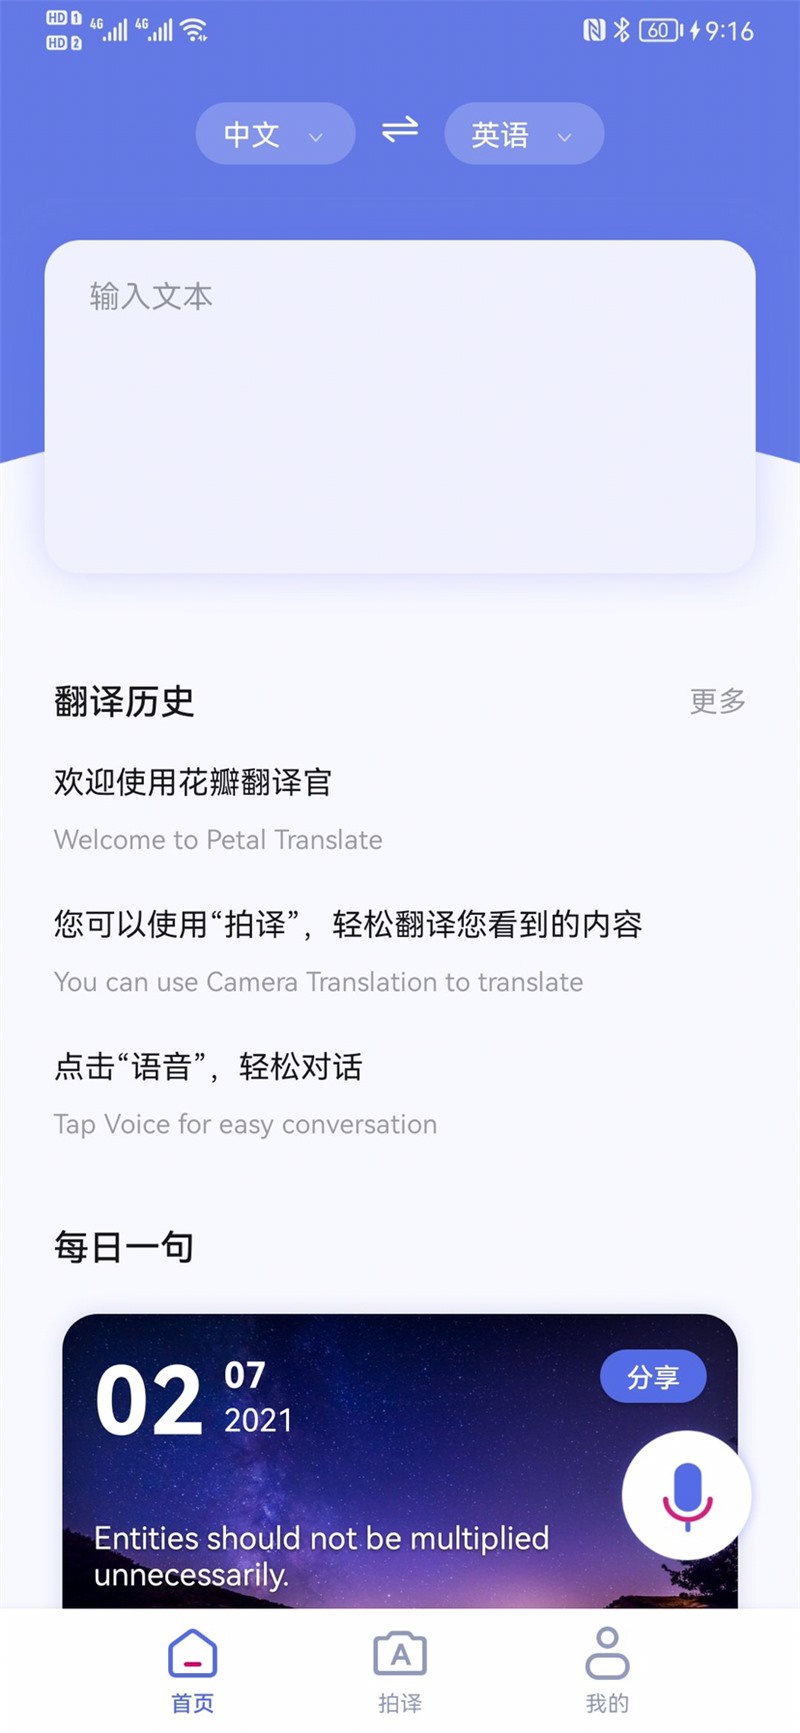 华为智能翻译软件花瓣翻译官 App 开启众测 参与赢好礼